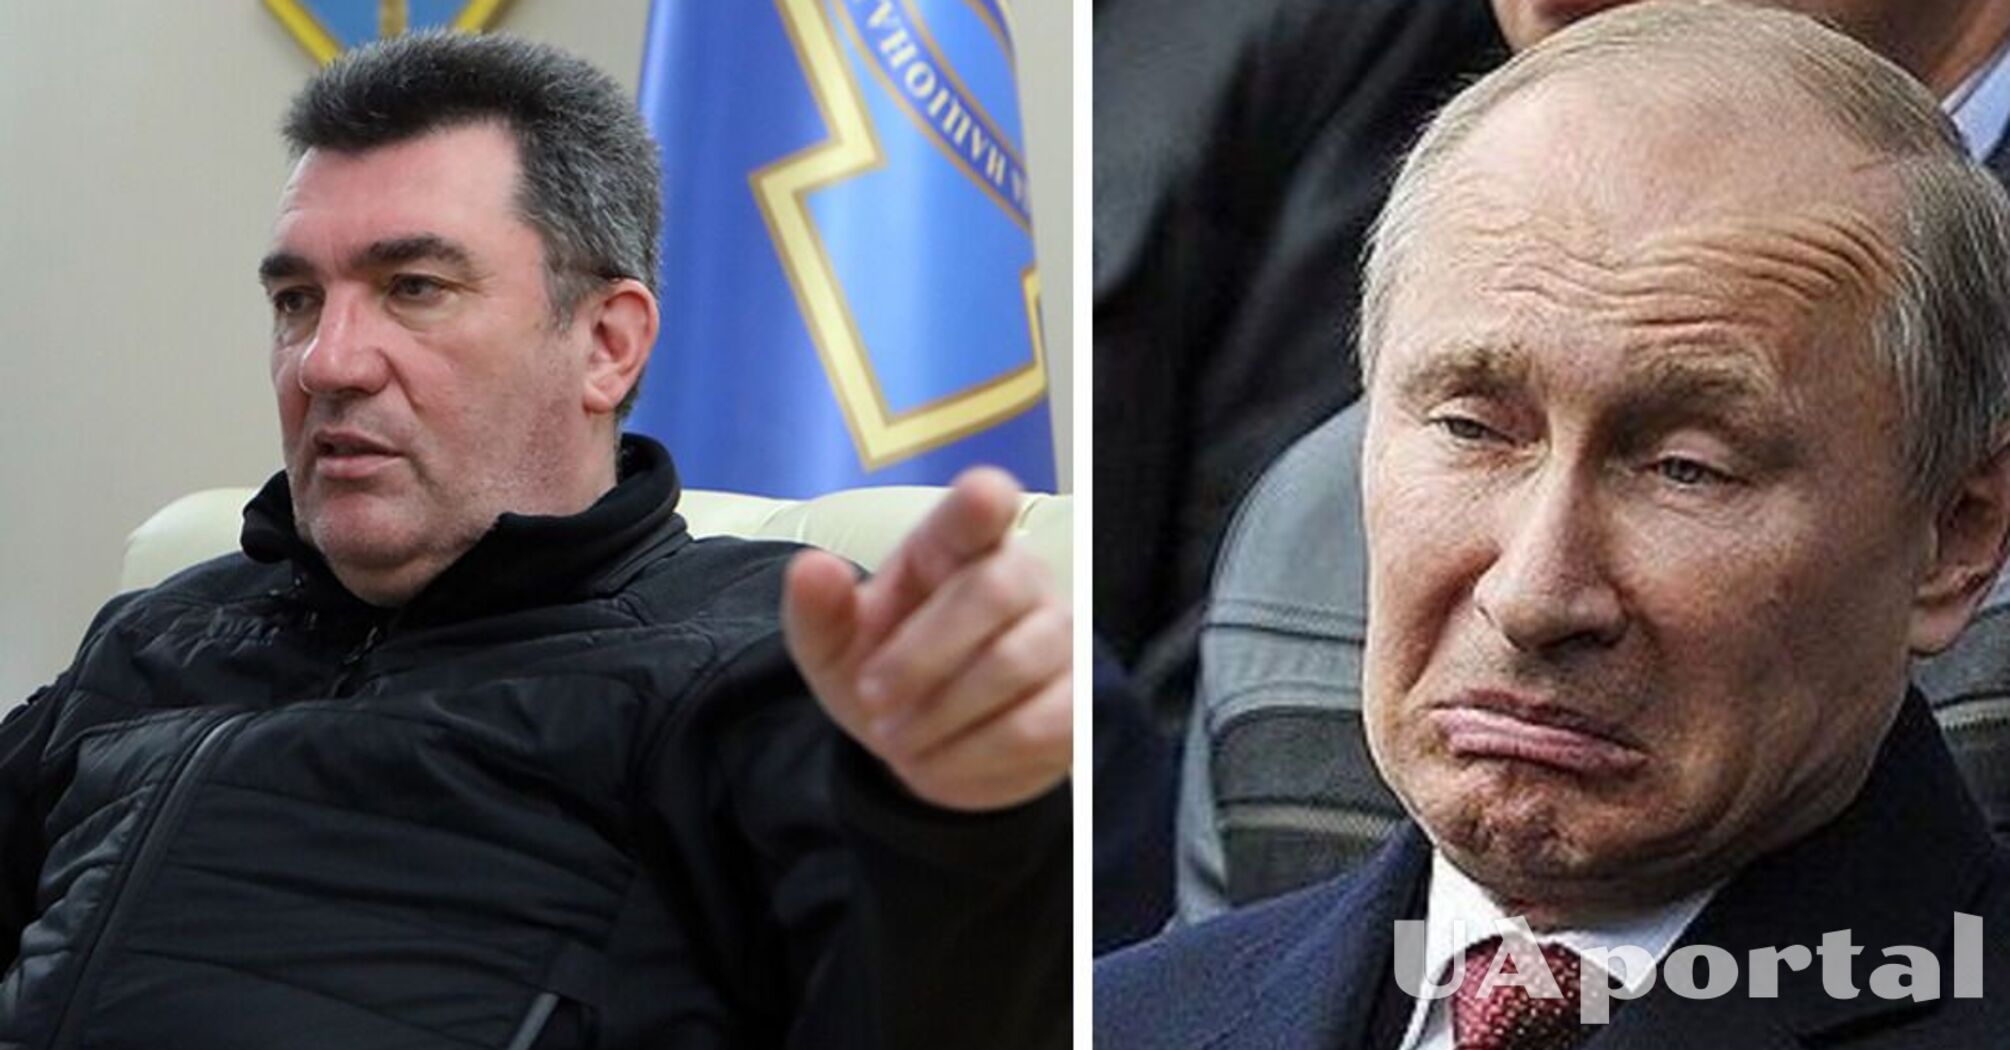 'Putin should prepare for the coffin, he is Hitler' - Danilov